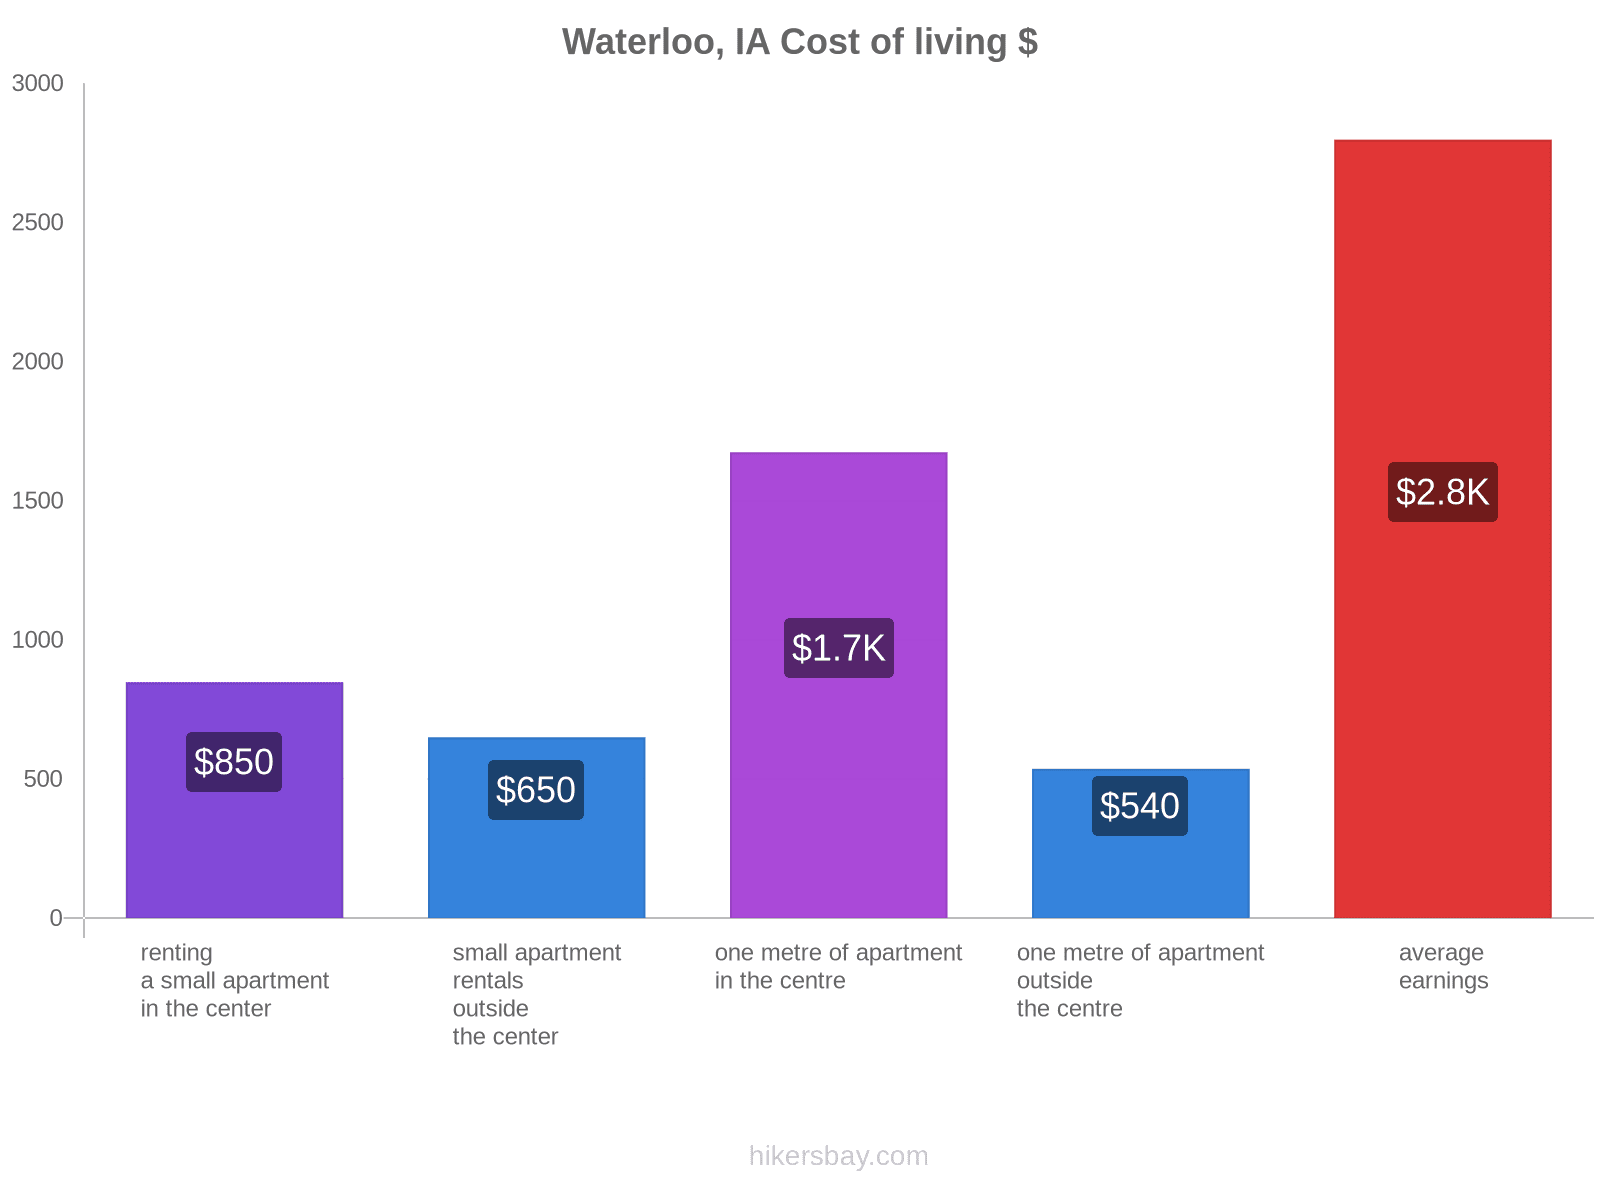 Waterloo, IA cost of living hikersbay.com